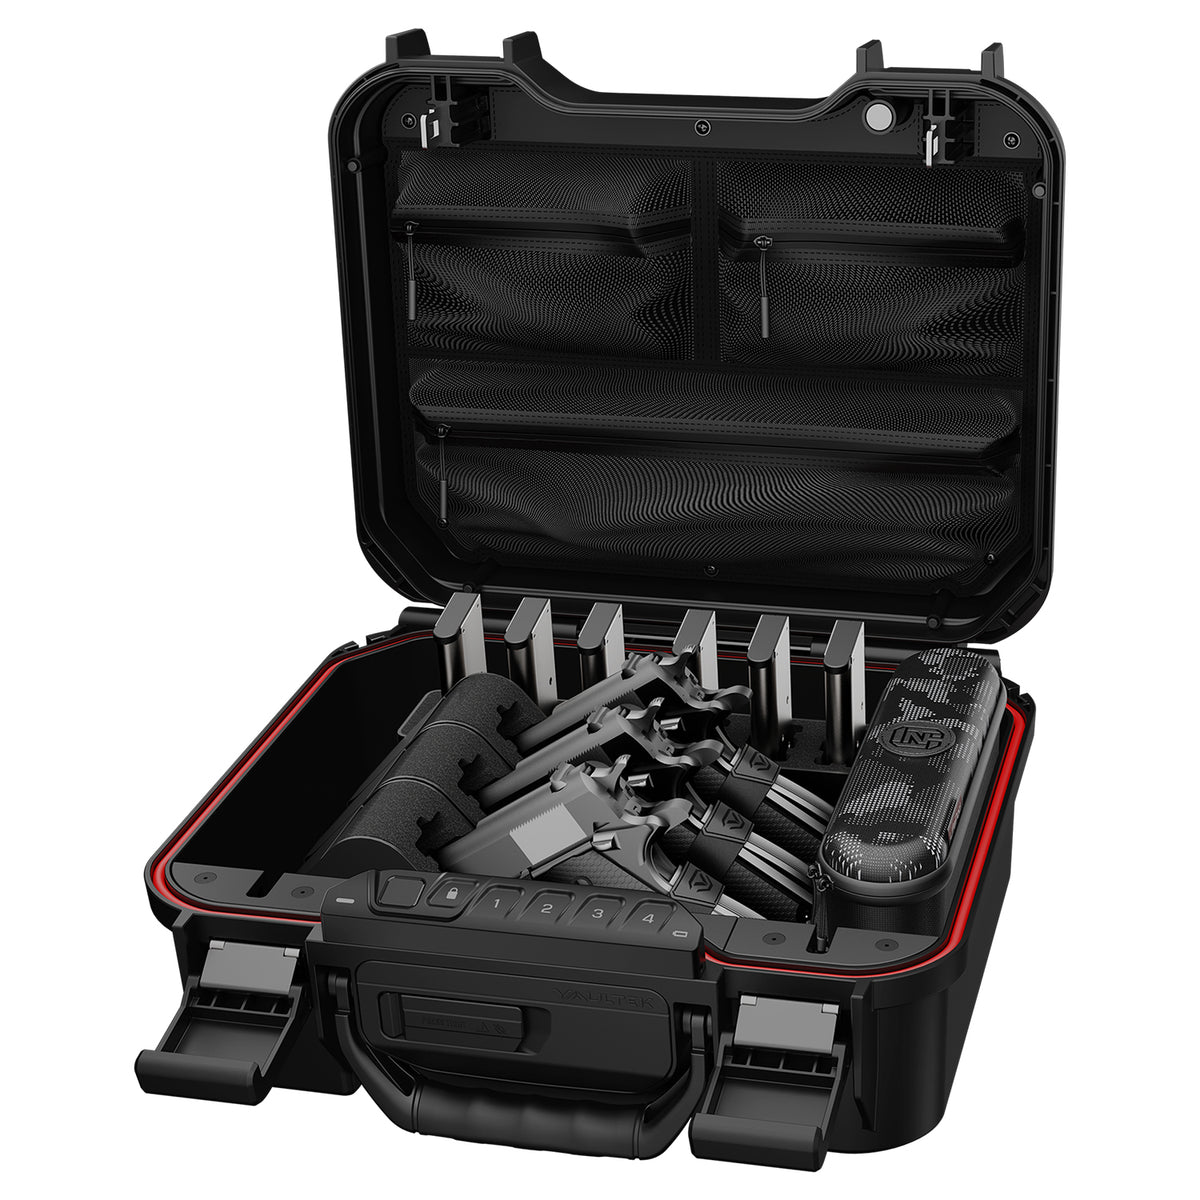 Vaultek Lifepod XR Weather Resistant Colion Noir Edition Open with Handguns